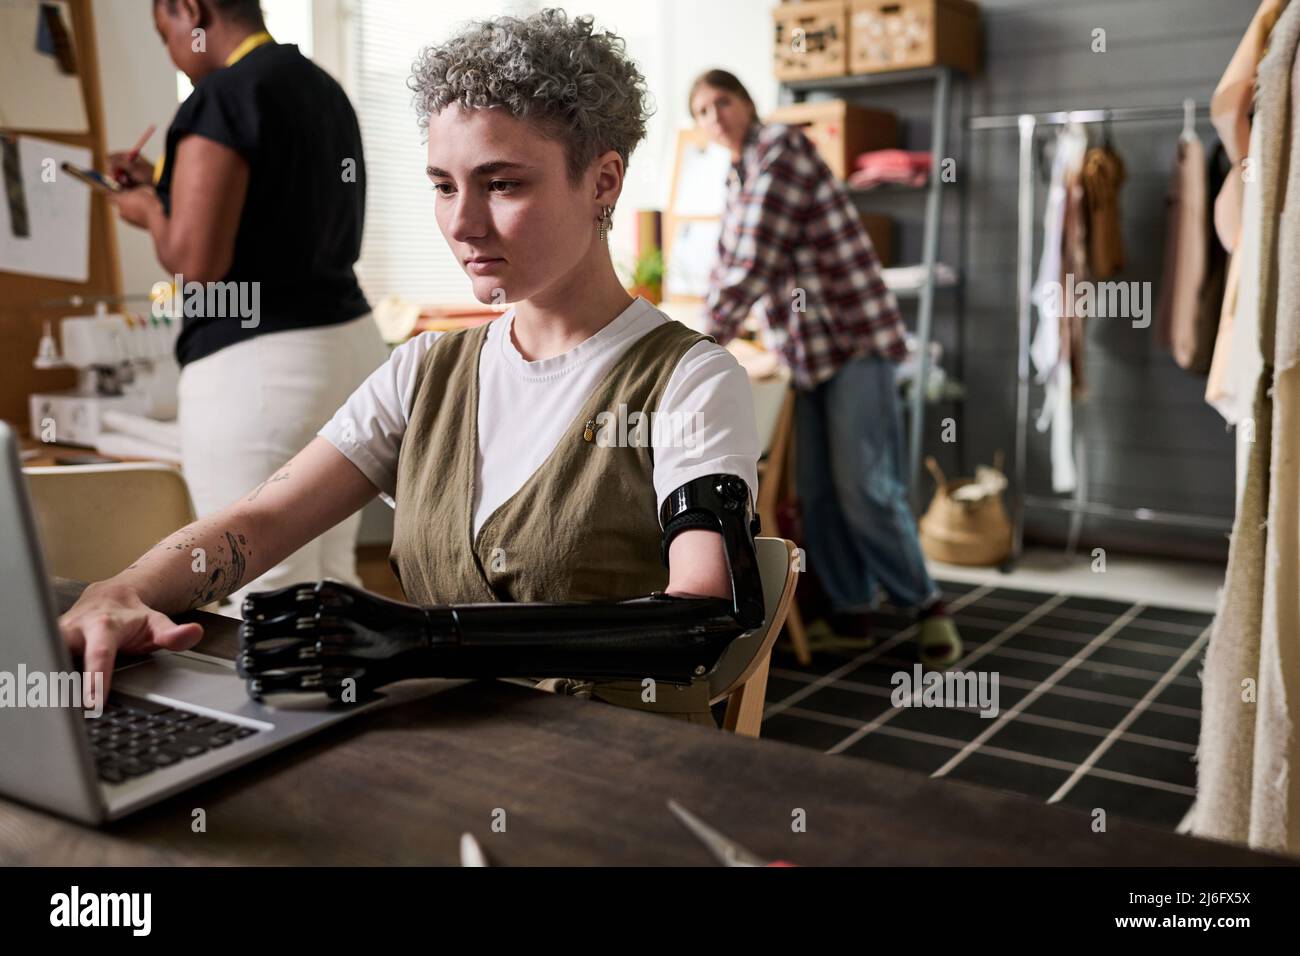 Junge, seriöse Modedesignerin mit myoelektrischem Arm, die auf dem Laptop-Tastenfeld tippt, während sie nach Online-Informationen über neue Trends sucht Stockfoto